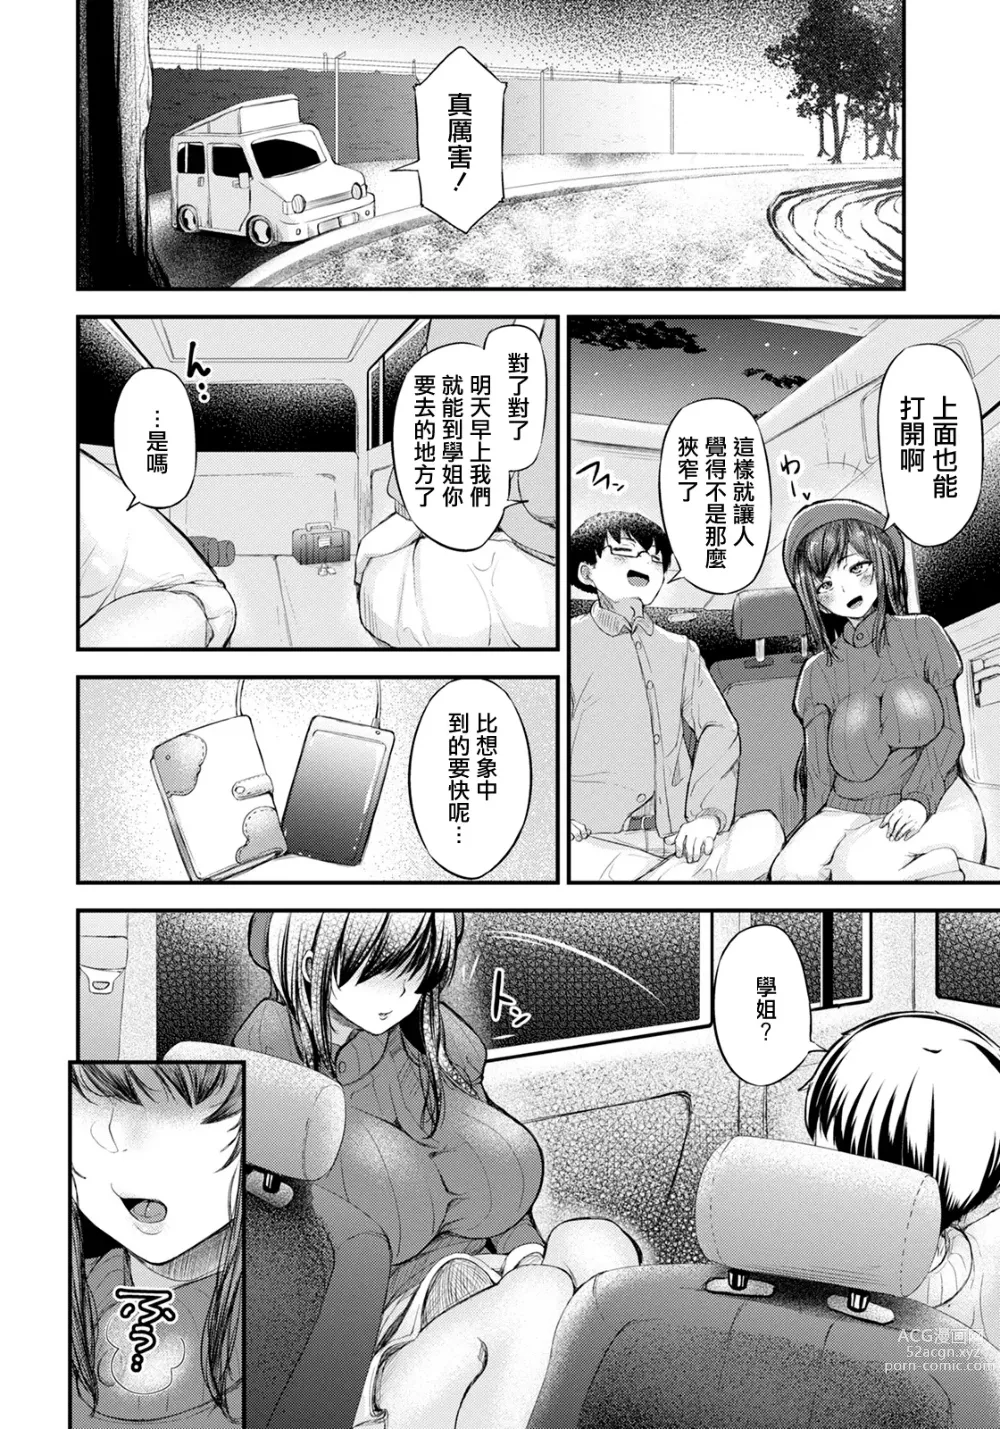 Page 6 of manga Shachu Haku